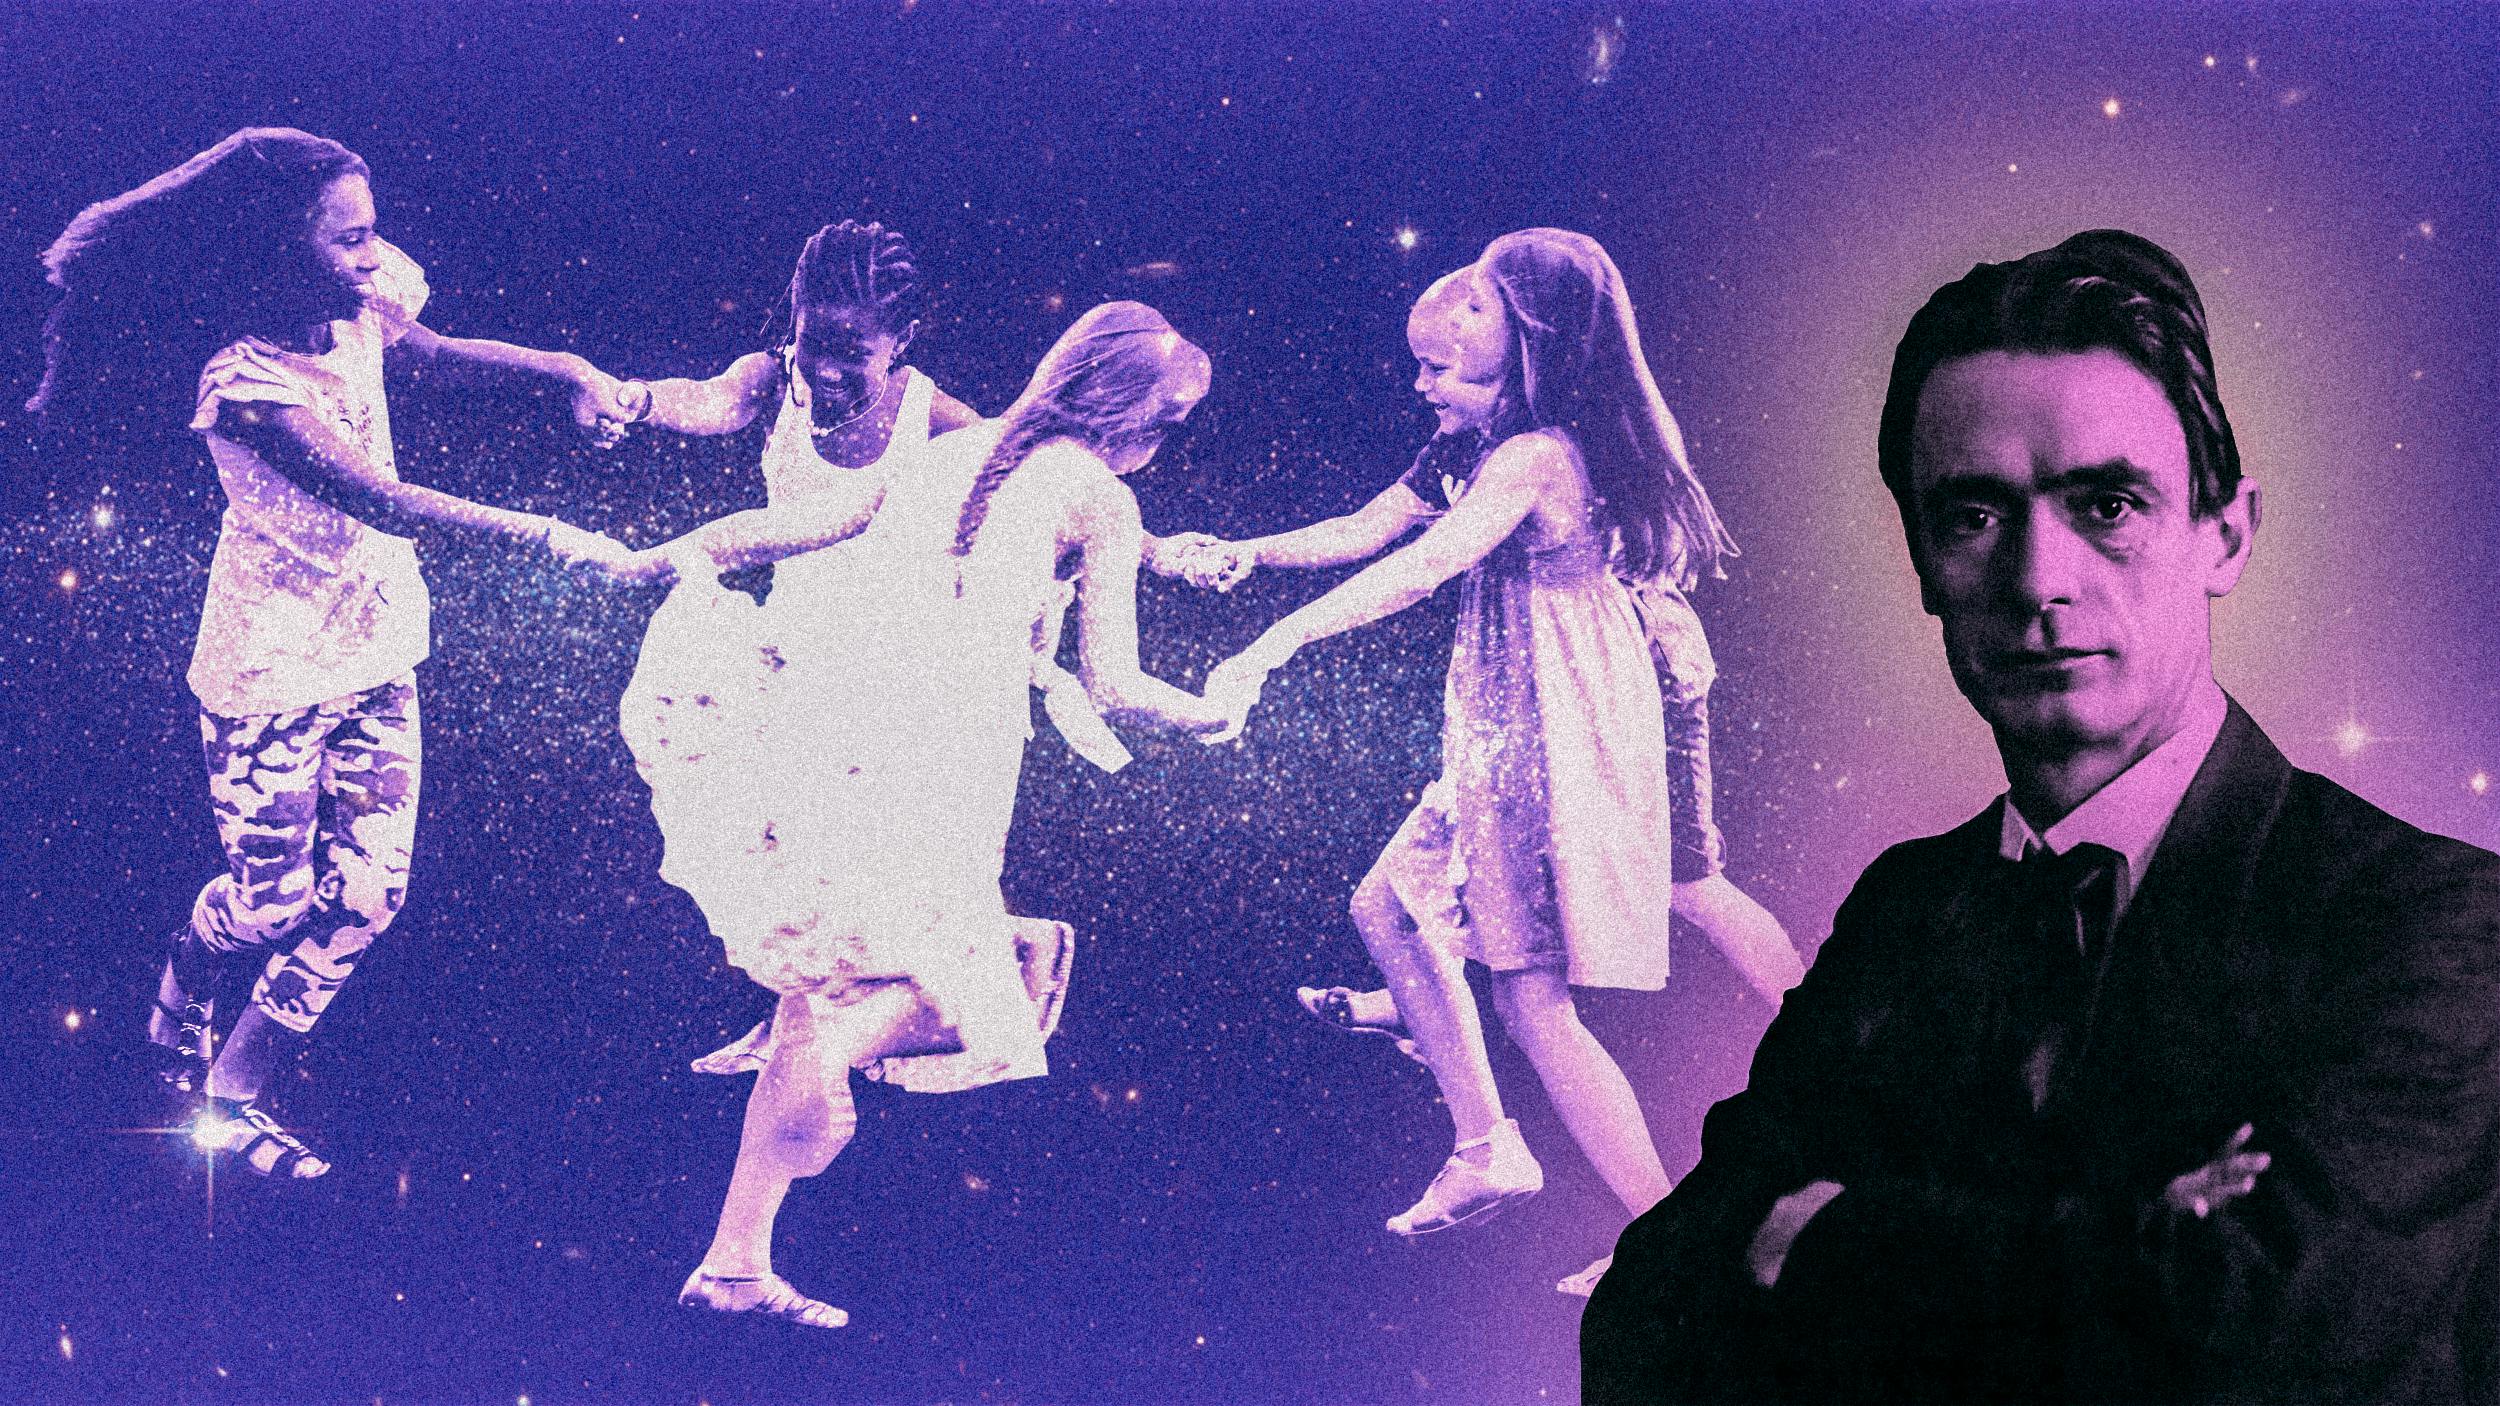 Auf dem Foto sieht man eine Collage: Rechts ein schwarz-weiß Portraitbild von Rudolf Steiner, links eine Gruppe von Mädchen, die sich an den Händen halten und im Kreis ihren Namen tanzen.